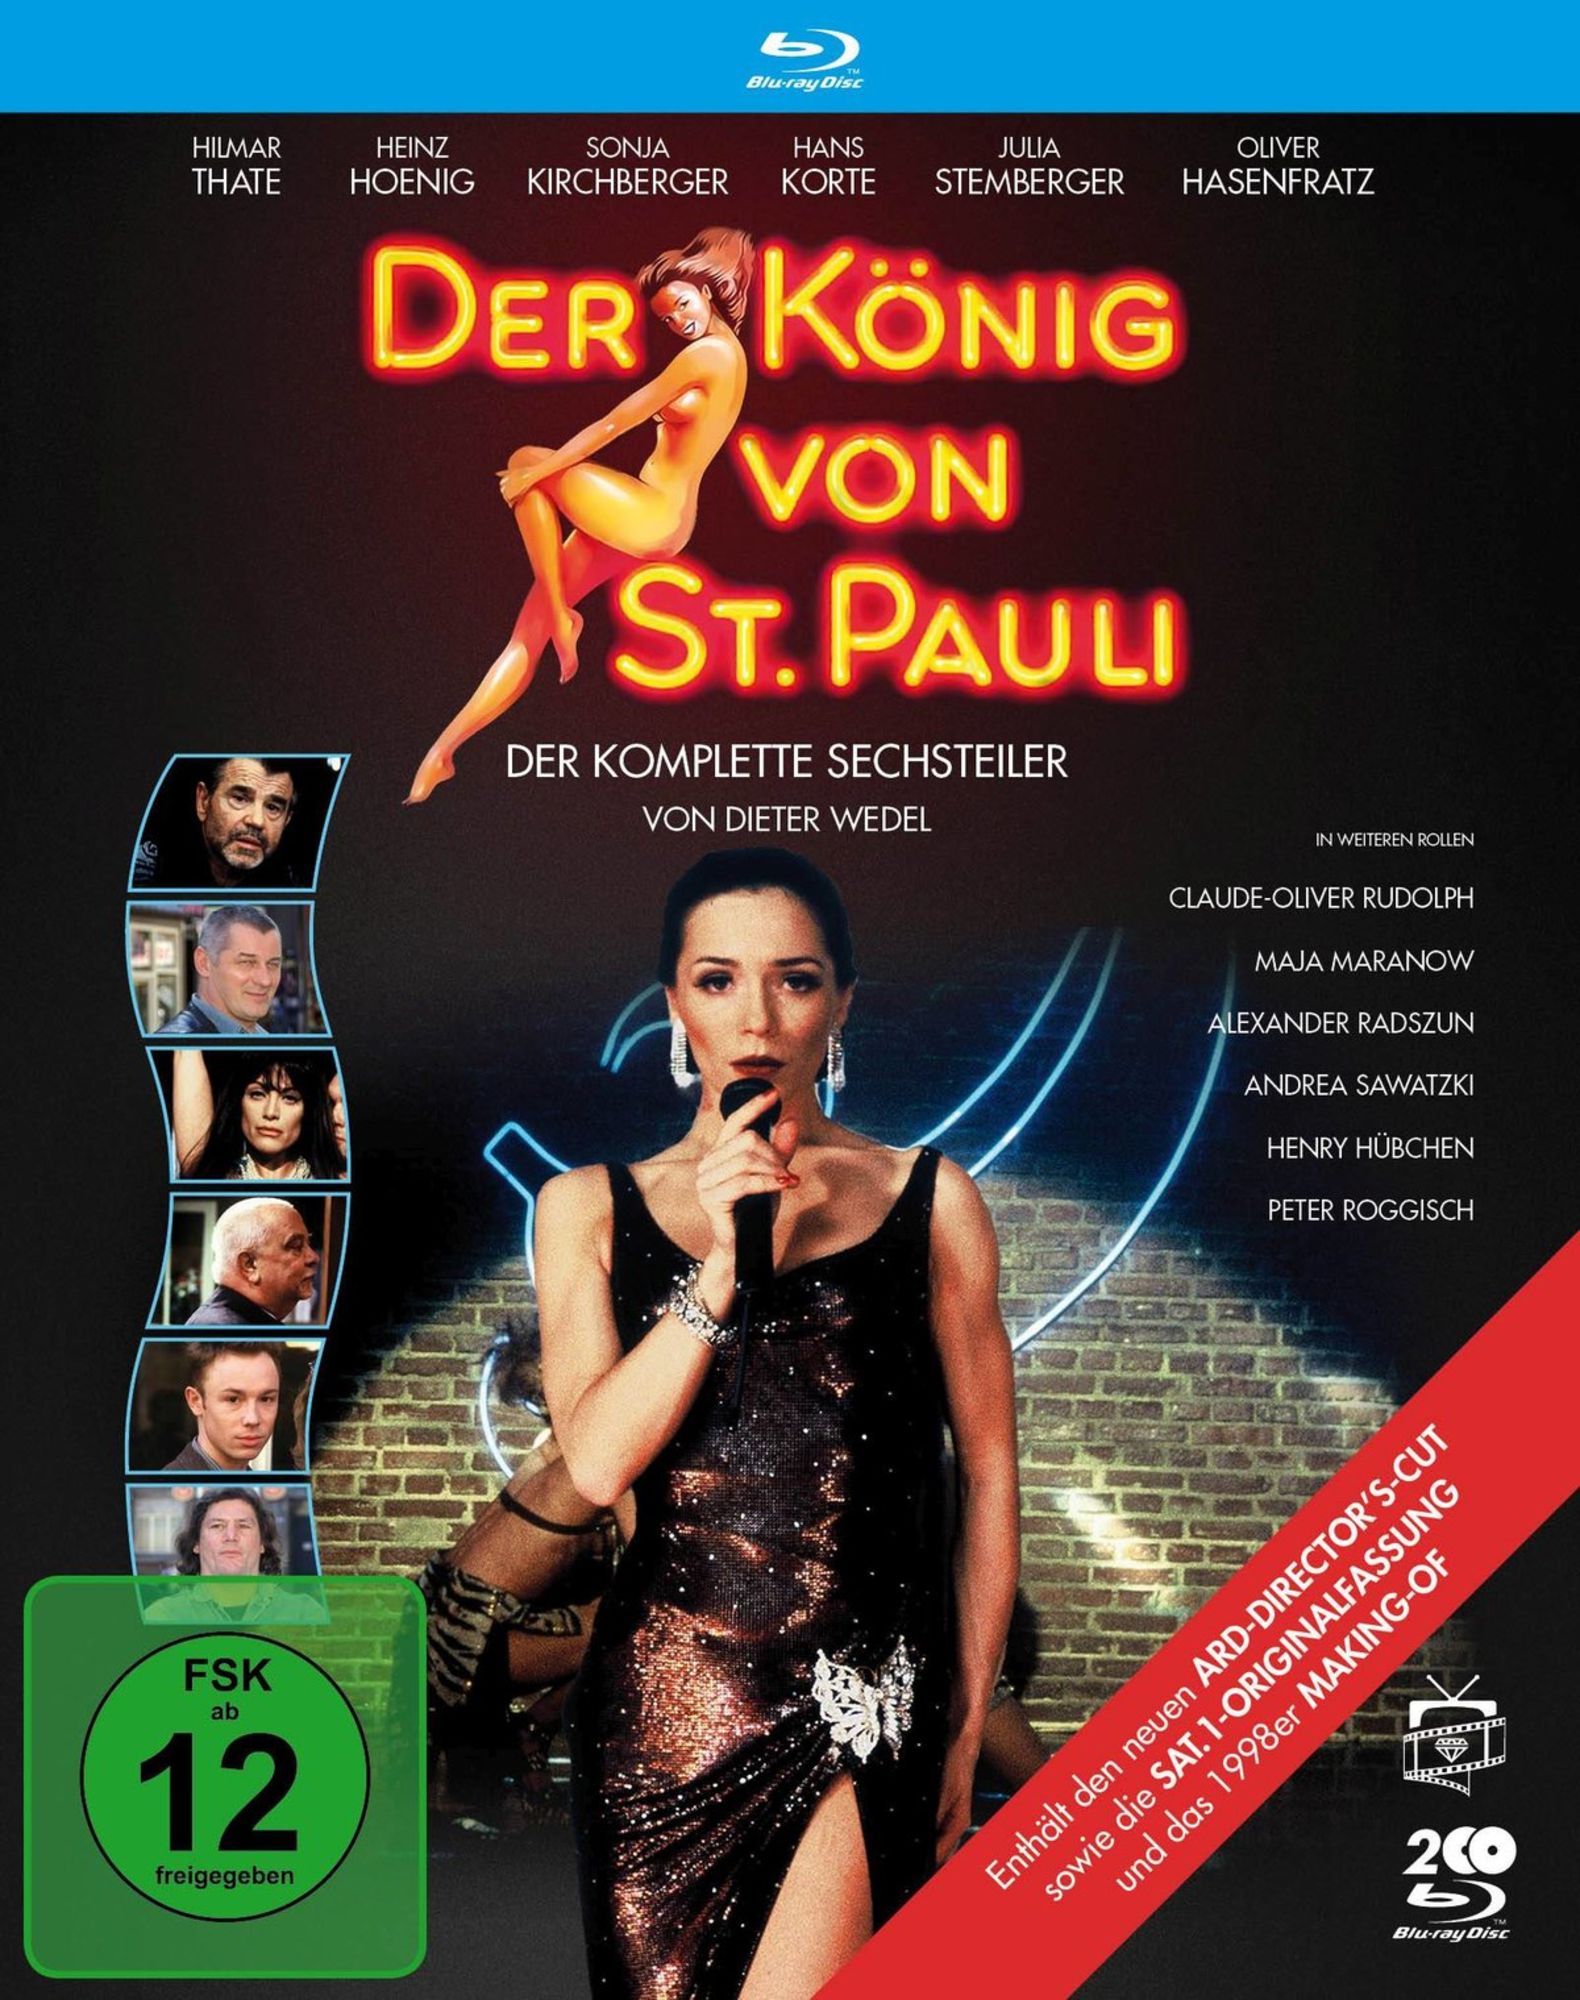 Das Wunder von Kärnten (DVD) – jpc